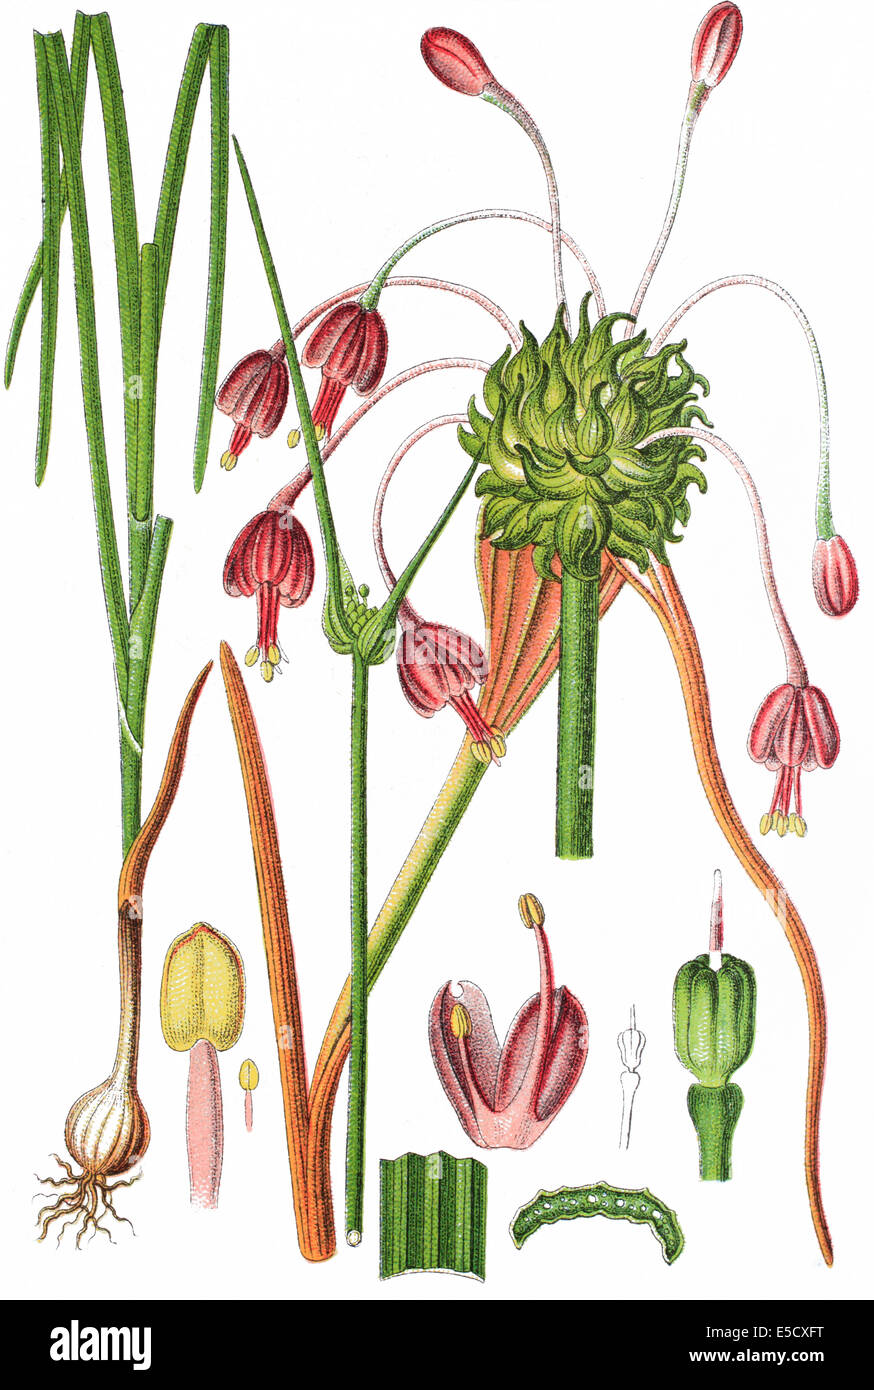 gekielte Knoblauch oder Hexe Knoblauch, Allium carinatum Stockfoto